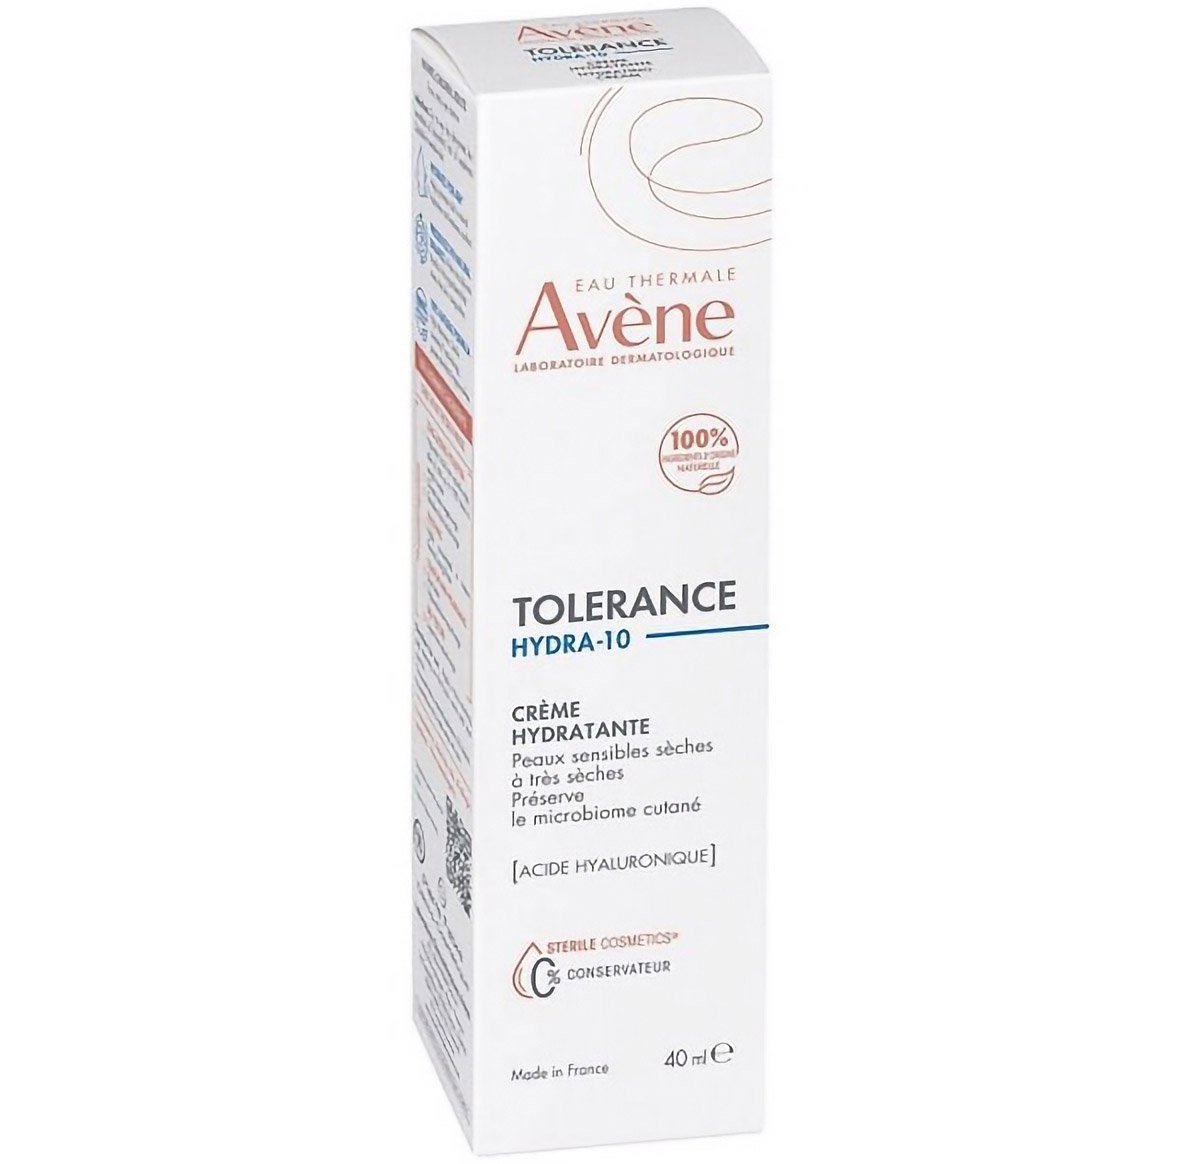 Увлажняющий крем для лица Avene Tolerance Hydra-10, для сухой и нормальной кожи, 40 мл - фото 2